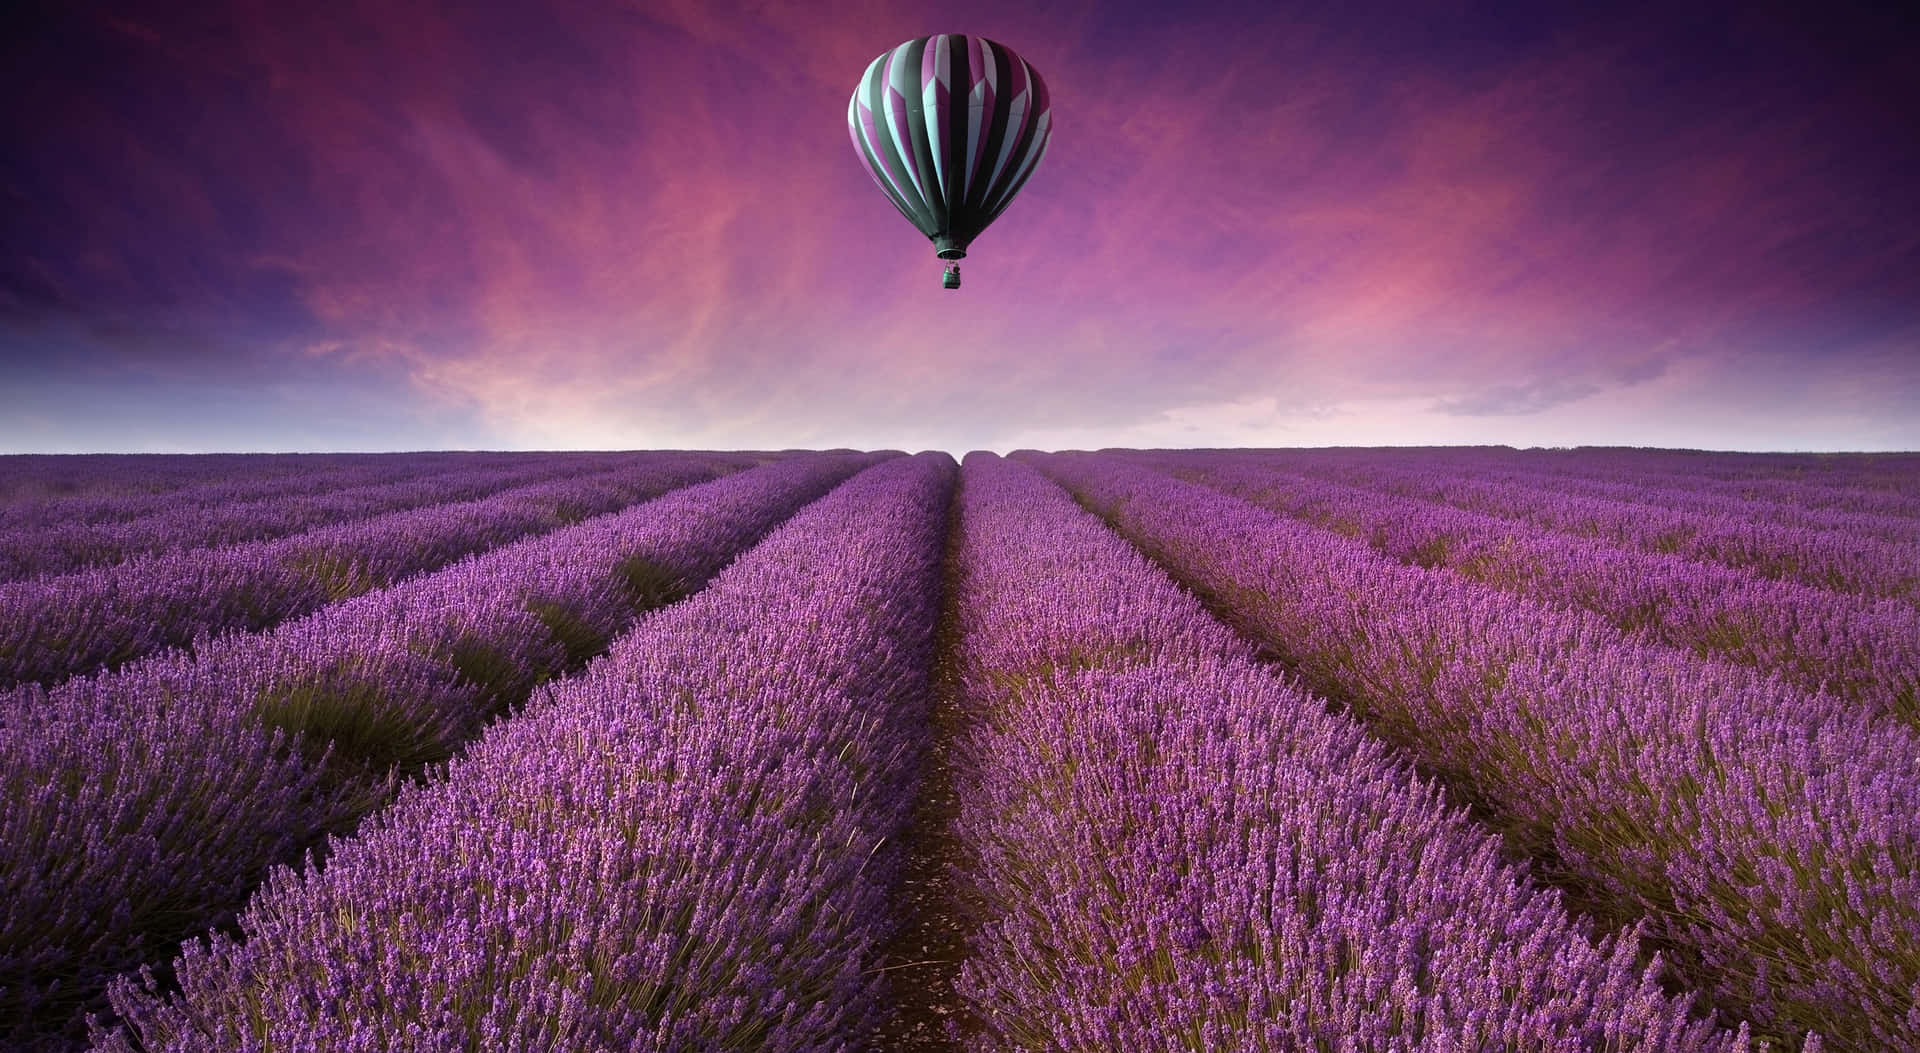 Take in the Beauty of Lavender Fields Wallpaper